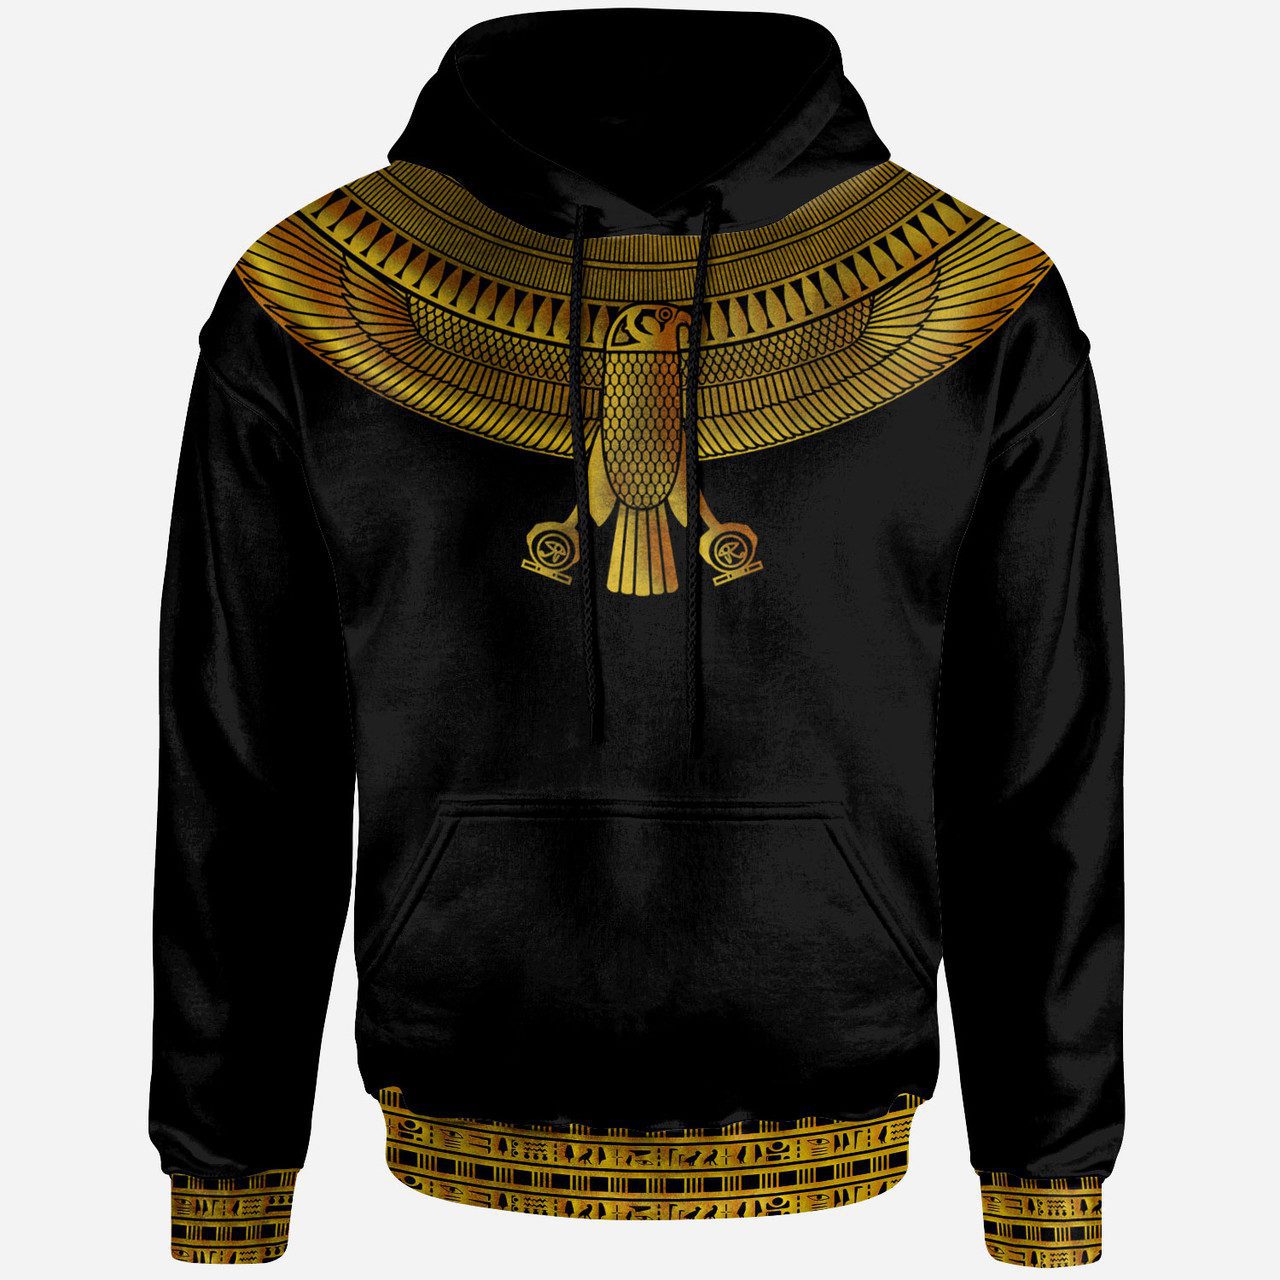 Egyptian Hoodie – Custom Africa Horus God Hoodie